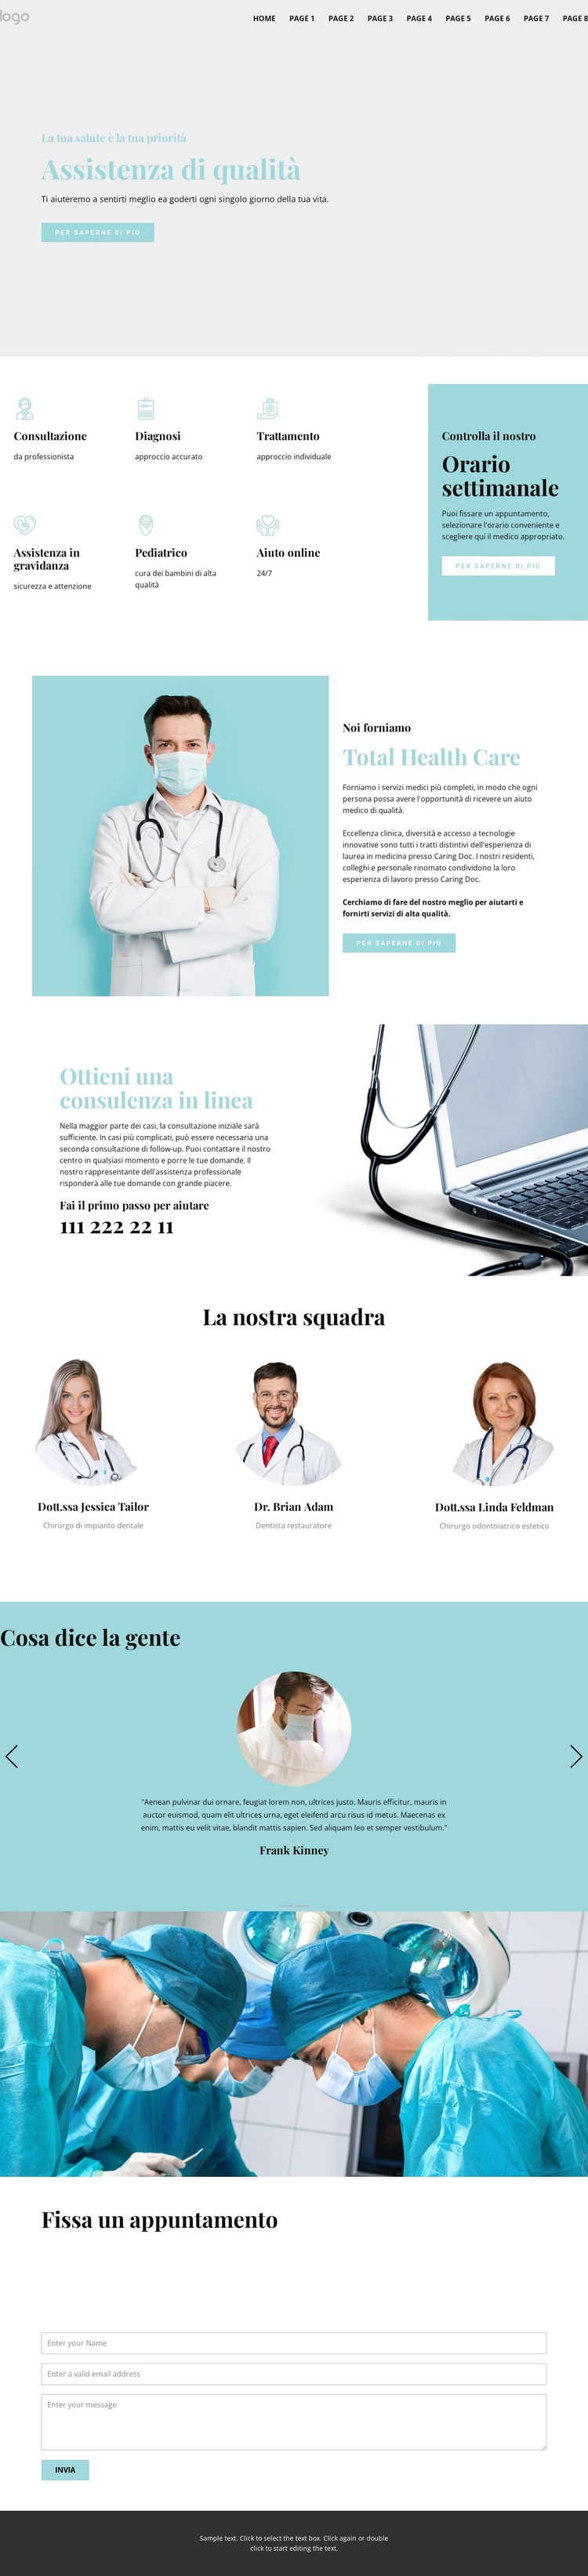 Assistenza medica di qualità Modello di sito Web